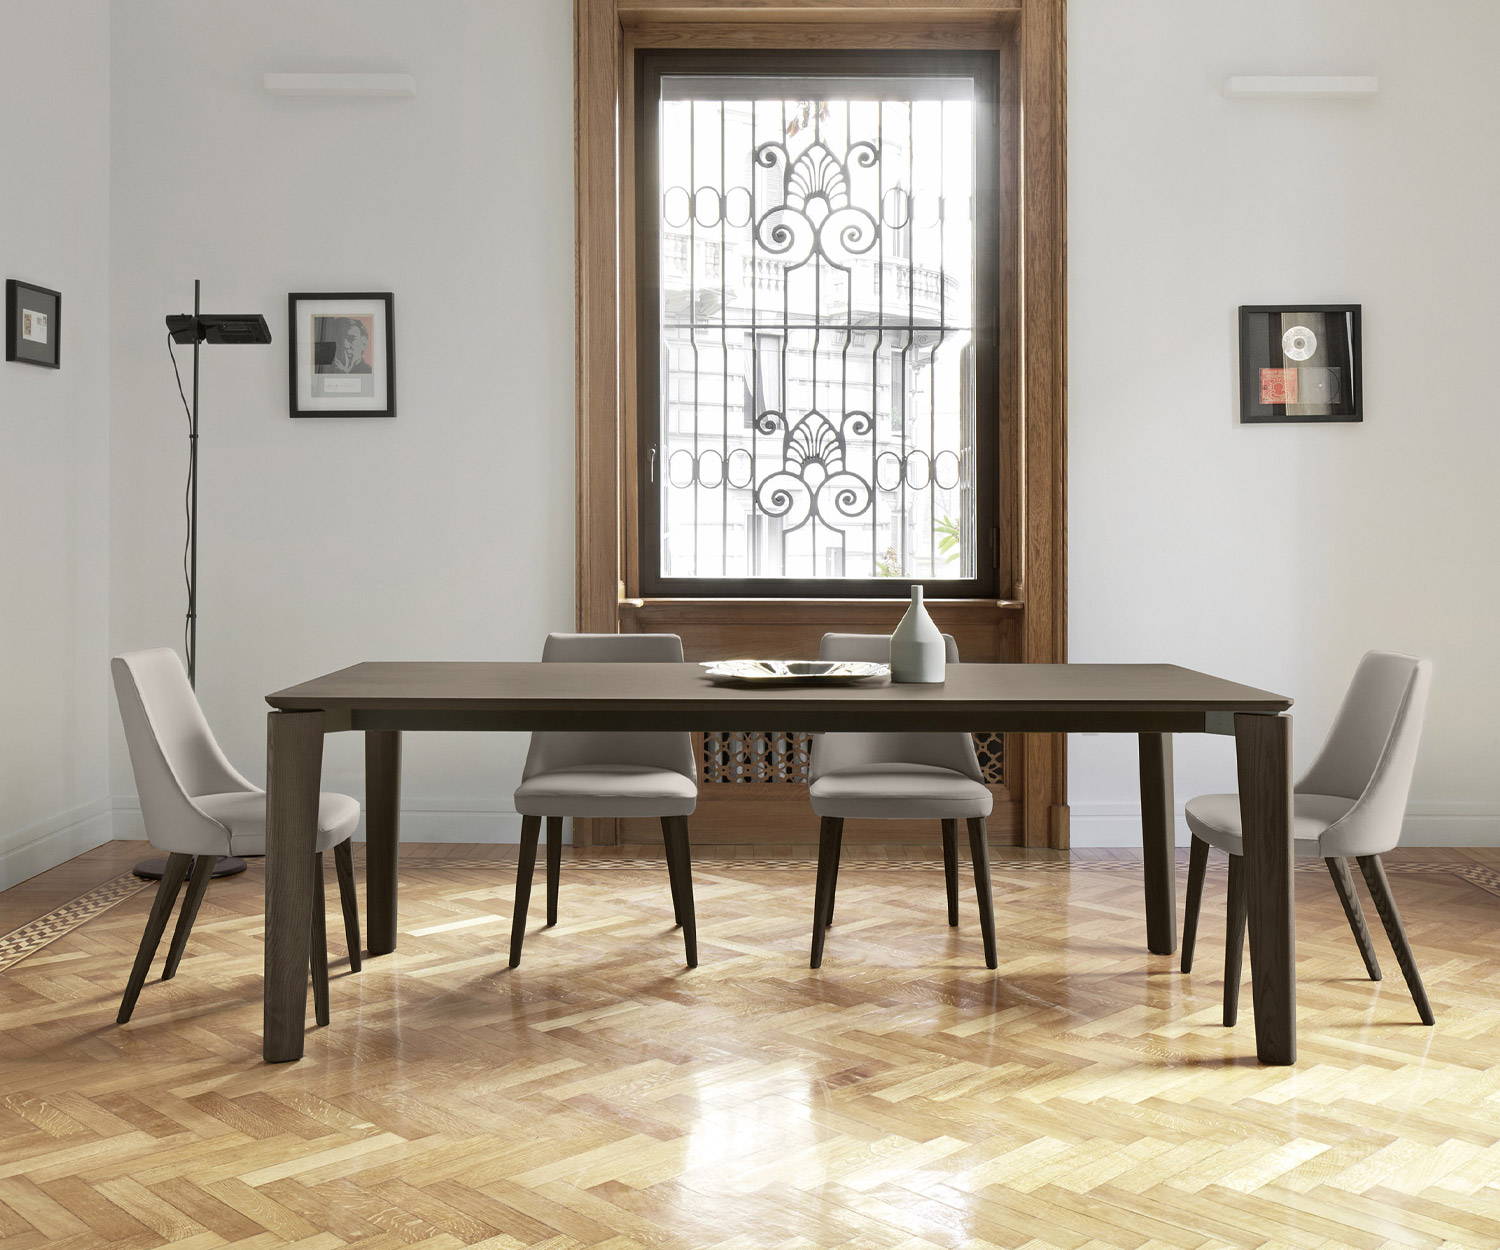 Moderner Livitalia Esszimmerstuhl Eva mit hellgrauem Bezug im Esszimmer an einem großen Tisch